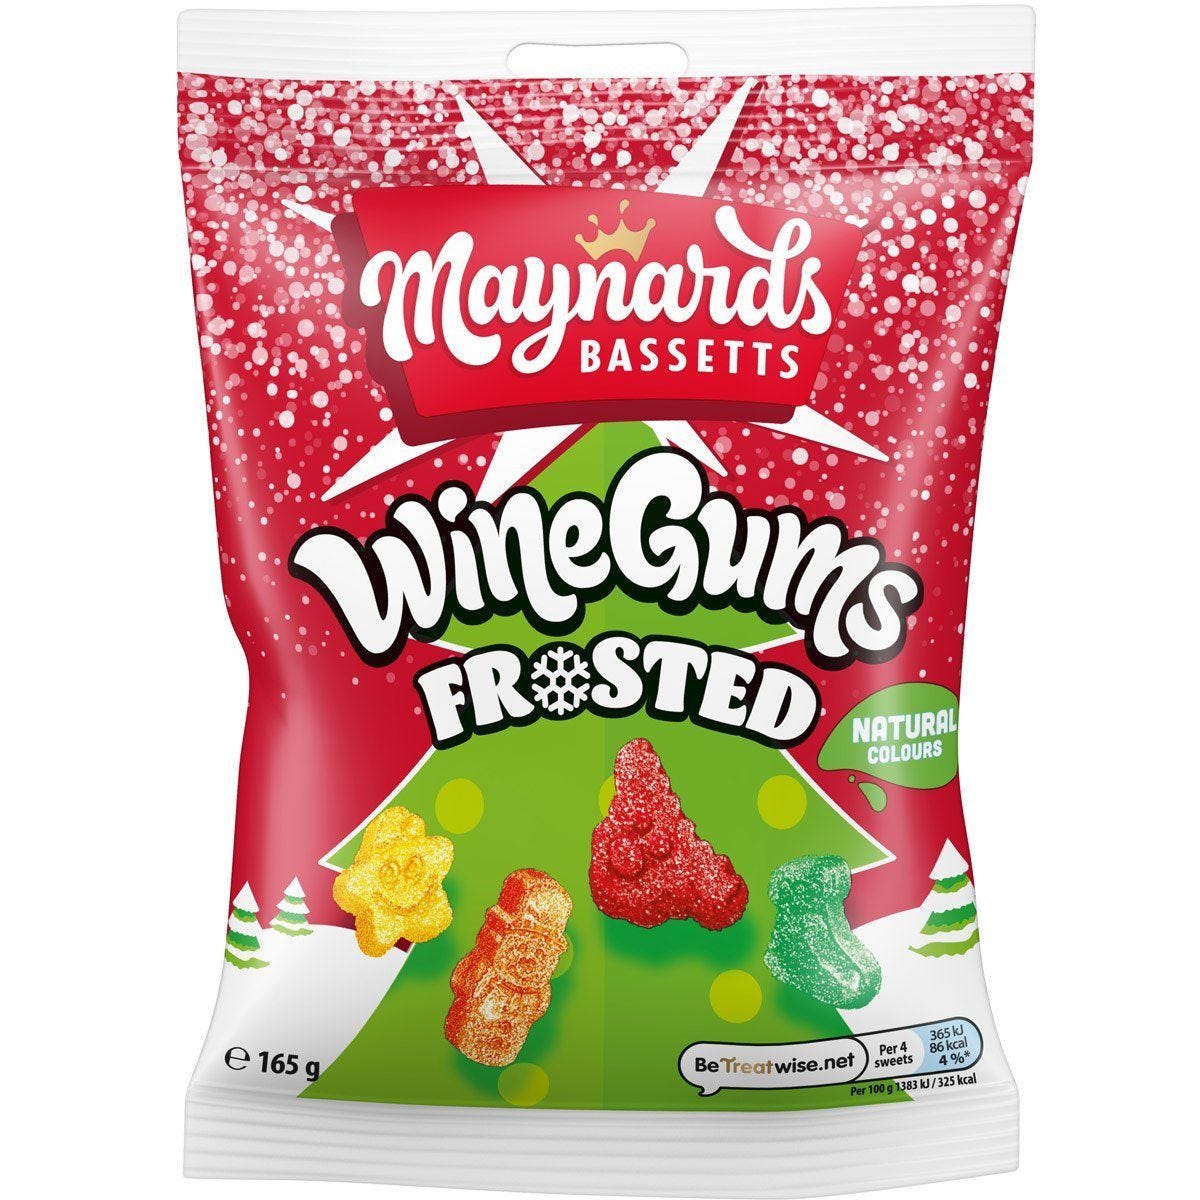 Maynards Bassetts: Frosted Wine Gums Bag